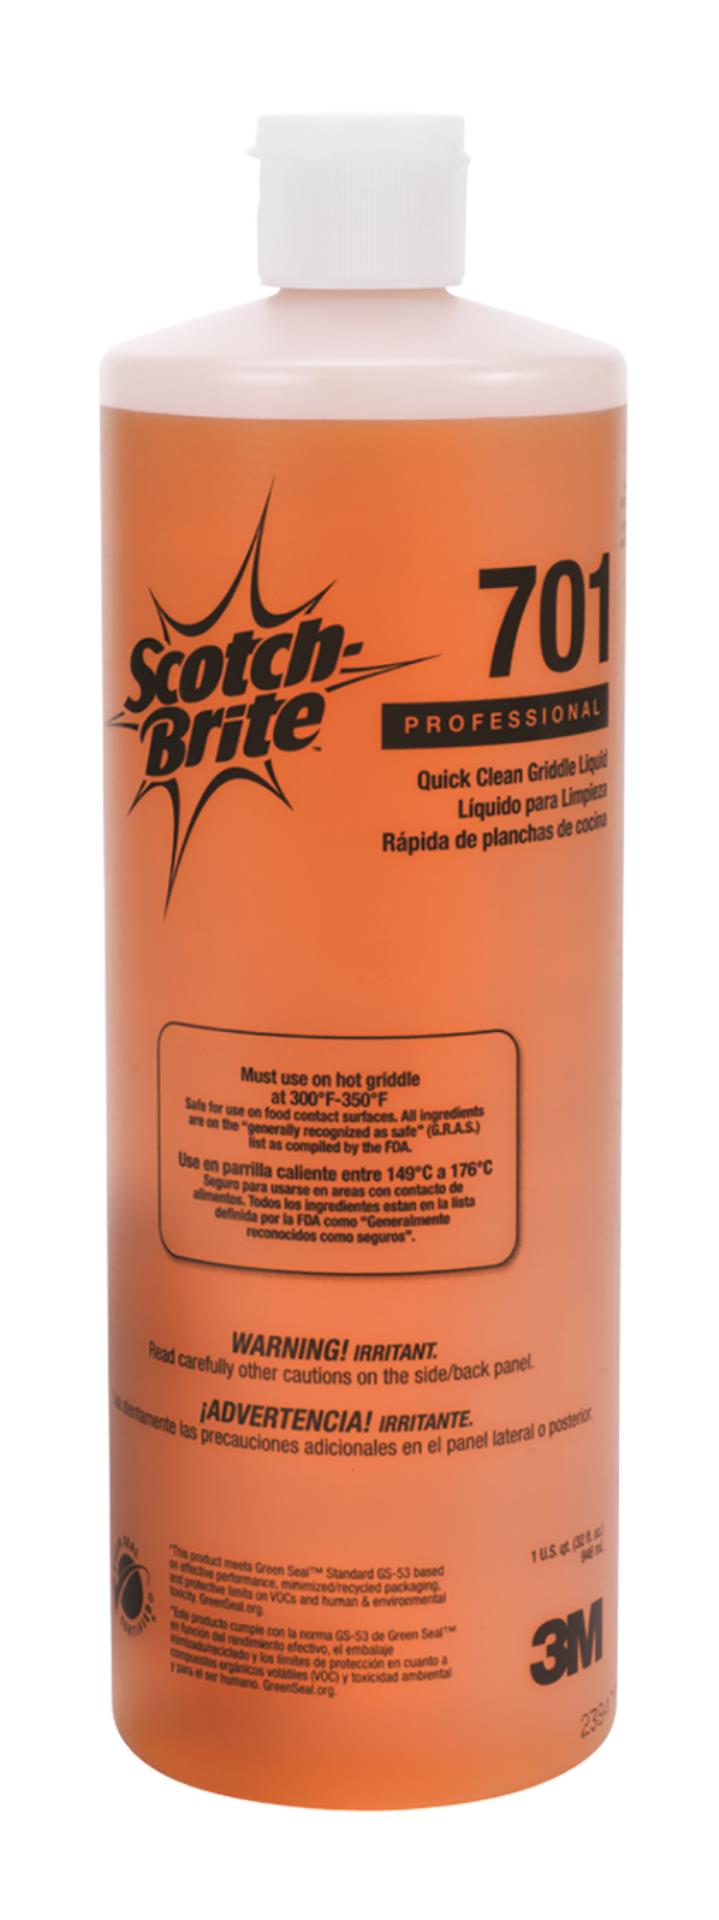 Pack of 3 2-Count Scotch-brite Clean Rinse Scrubber 202